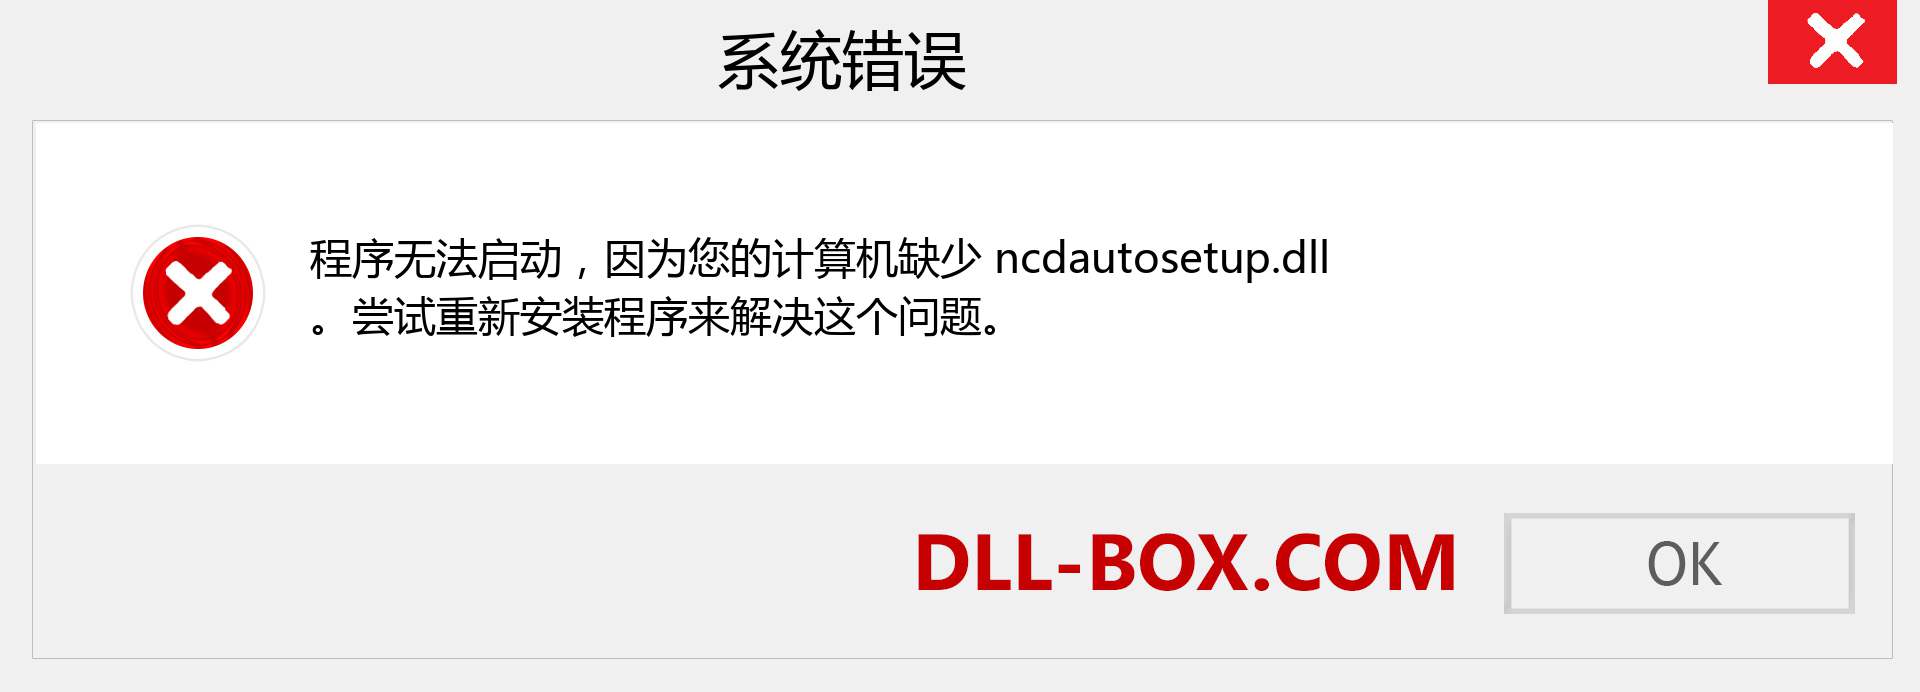 ncdautosetup.dll 文件丢失？。 适用于 Windows 7、8、10 的下载 - 修复 Windows、照片、图像上的 ncdautosetup dll 丢失错误